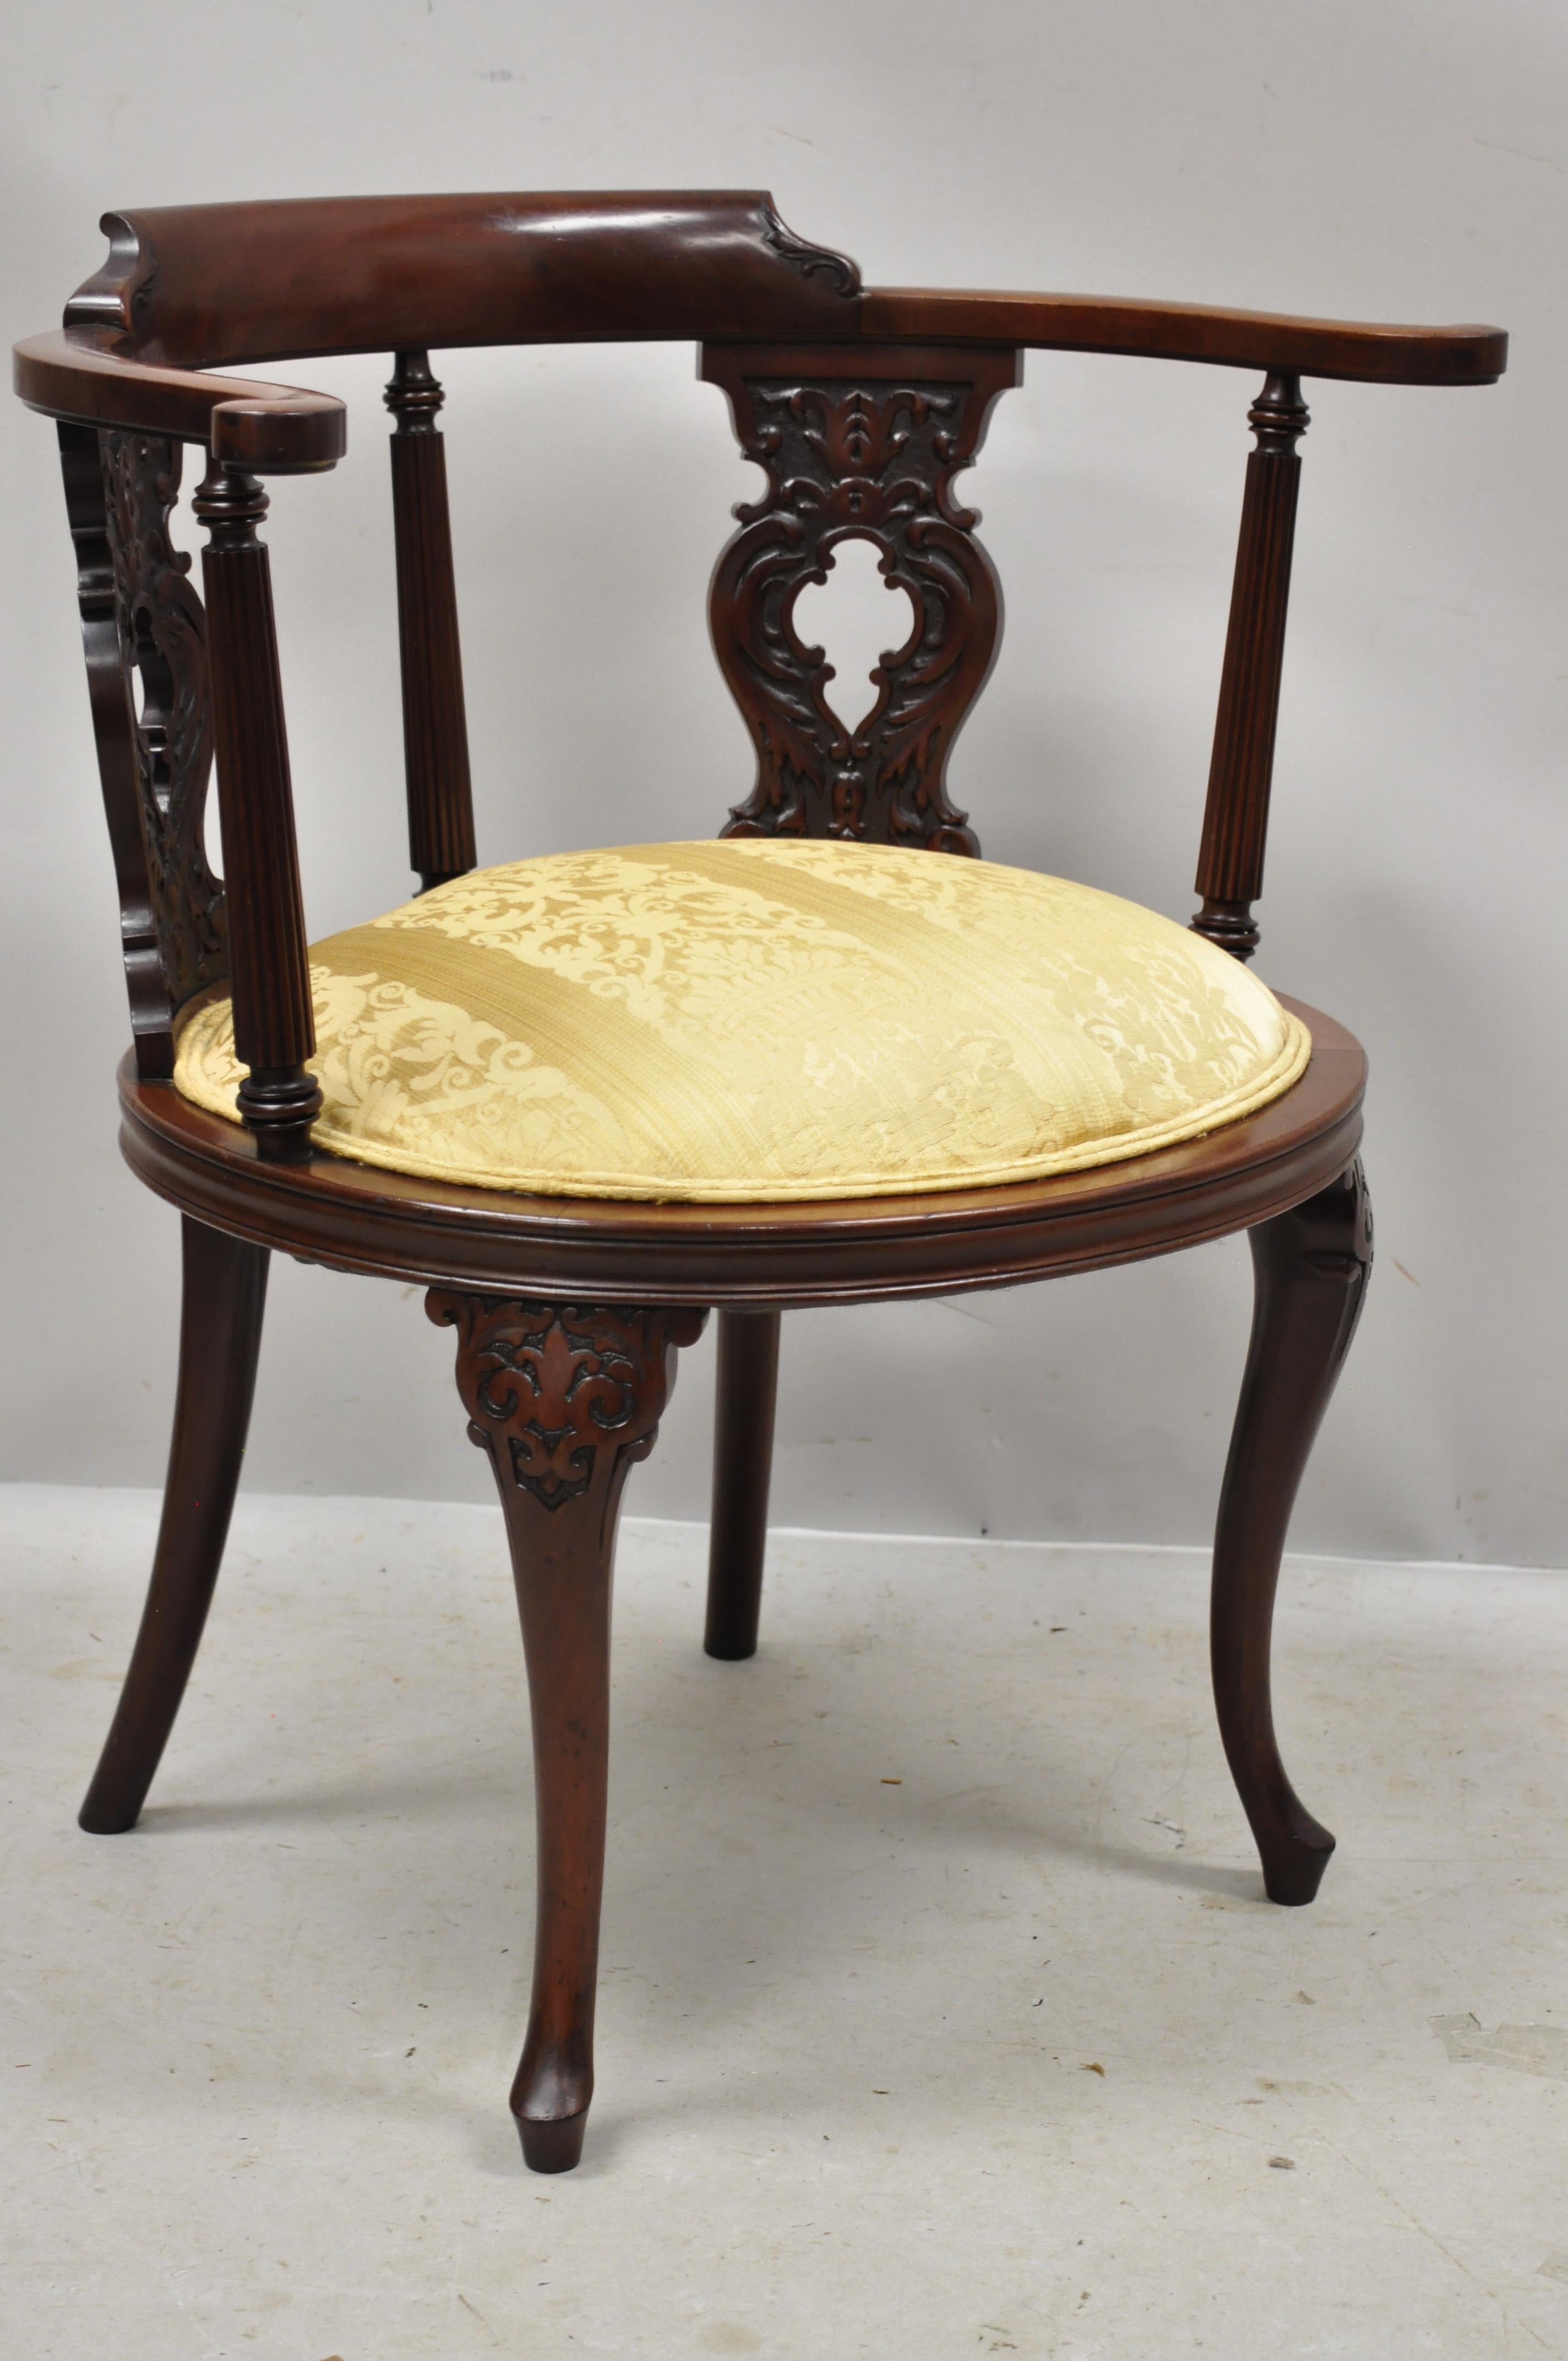 Ancienne chaise d'appoint en acajou sculpté de style victorien français. Cet article est construit en bois massif, avec un beau grain de bois, une assise rembourrée dorée, des détails joliment sculptés, des pieds en cabriole, un très bel article